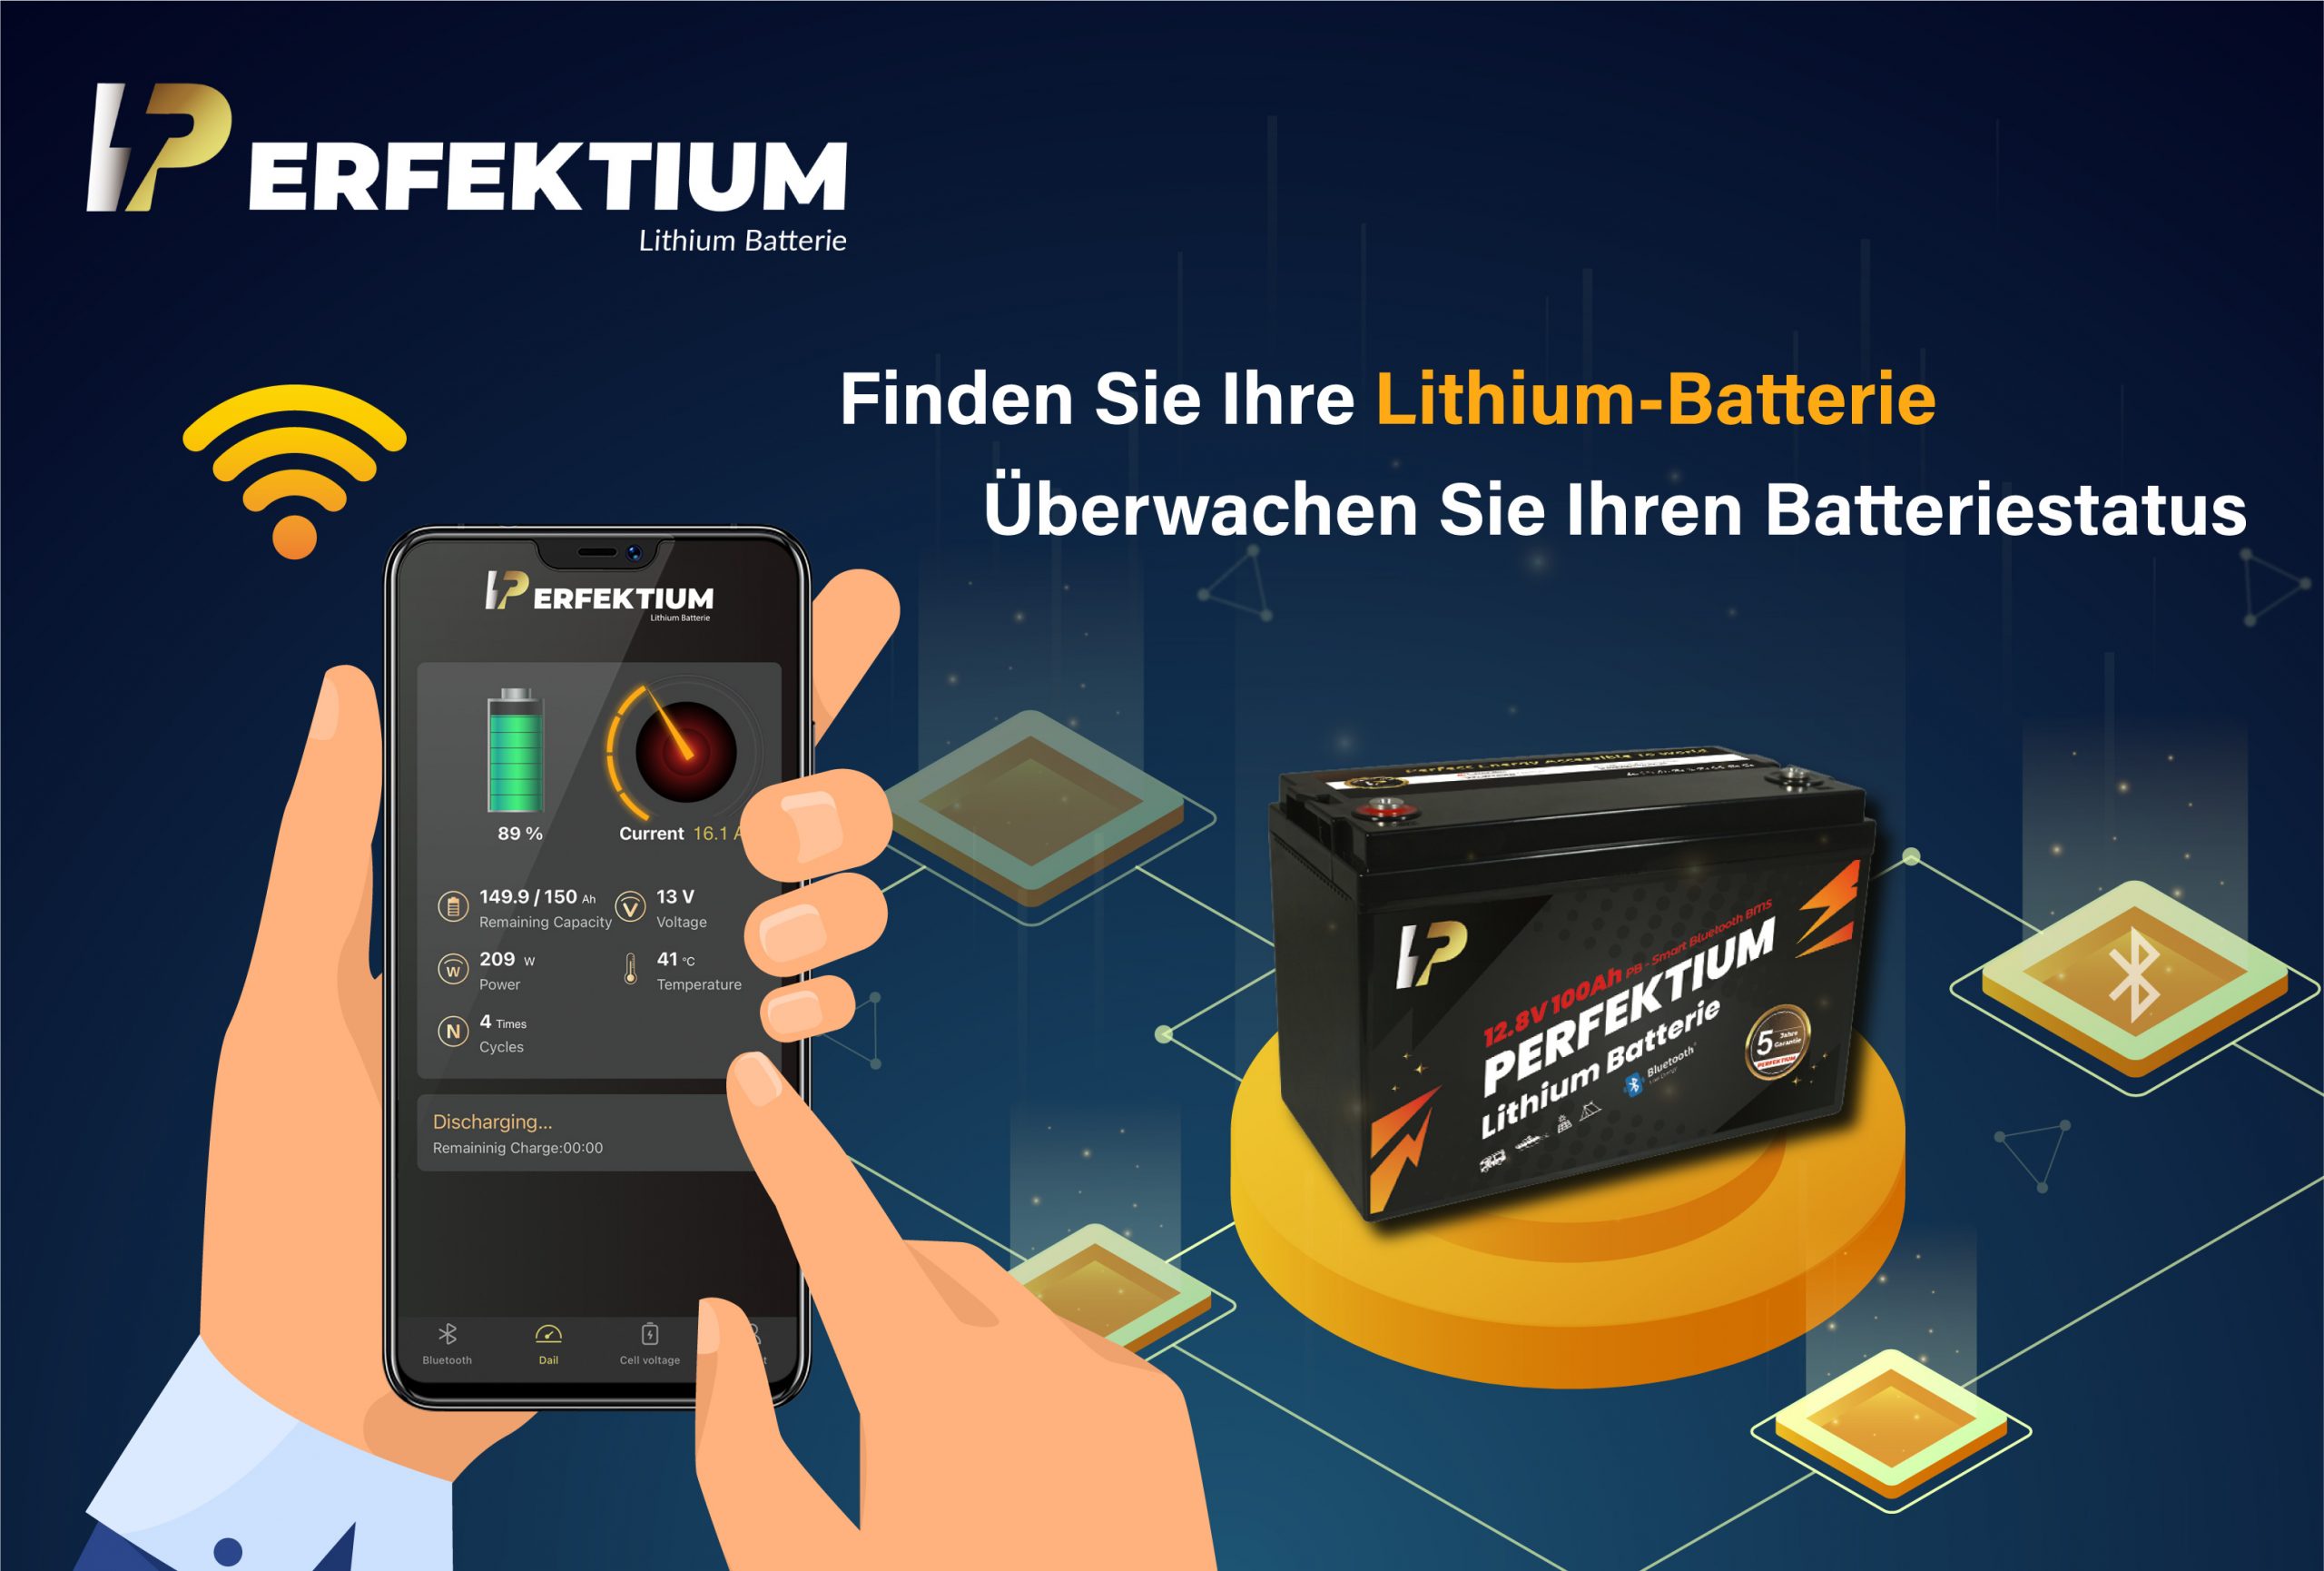 https://www.wohnmobil-mieten-billig.de/shop/images/product_images/original_images/Perfektium-lithium-batterie-pf-12-100s-h-2-scaled.jpg